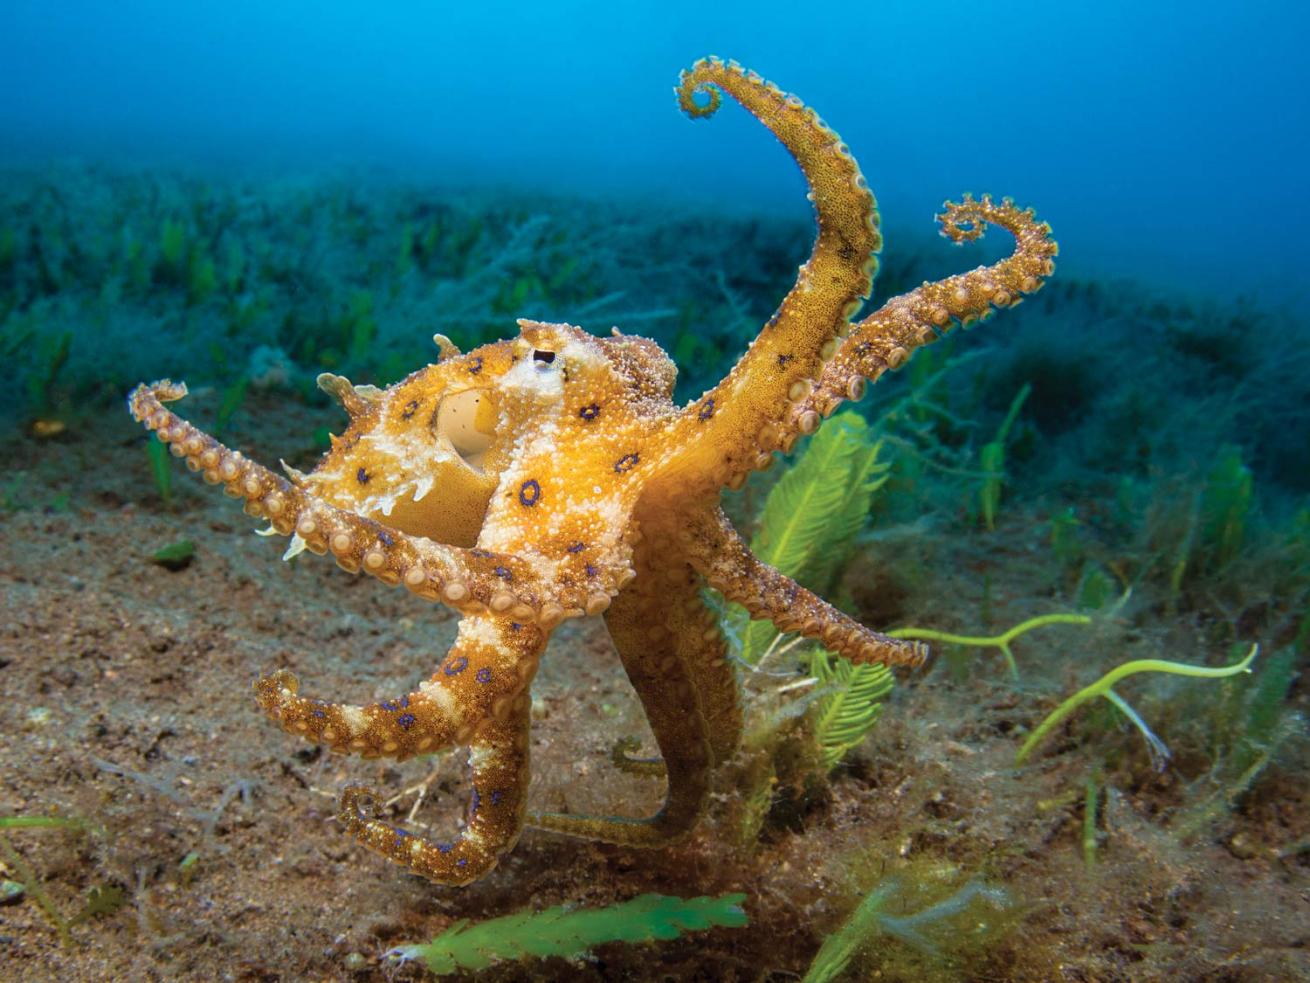 Octupus on muck sea floor